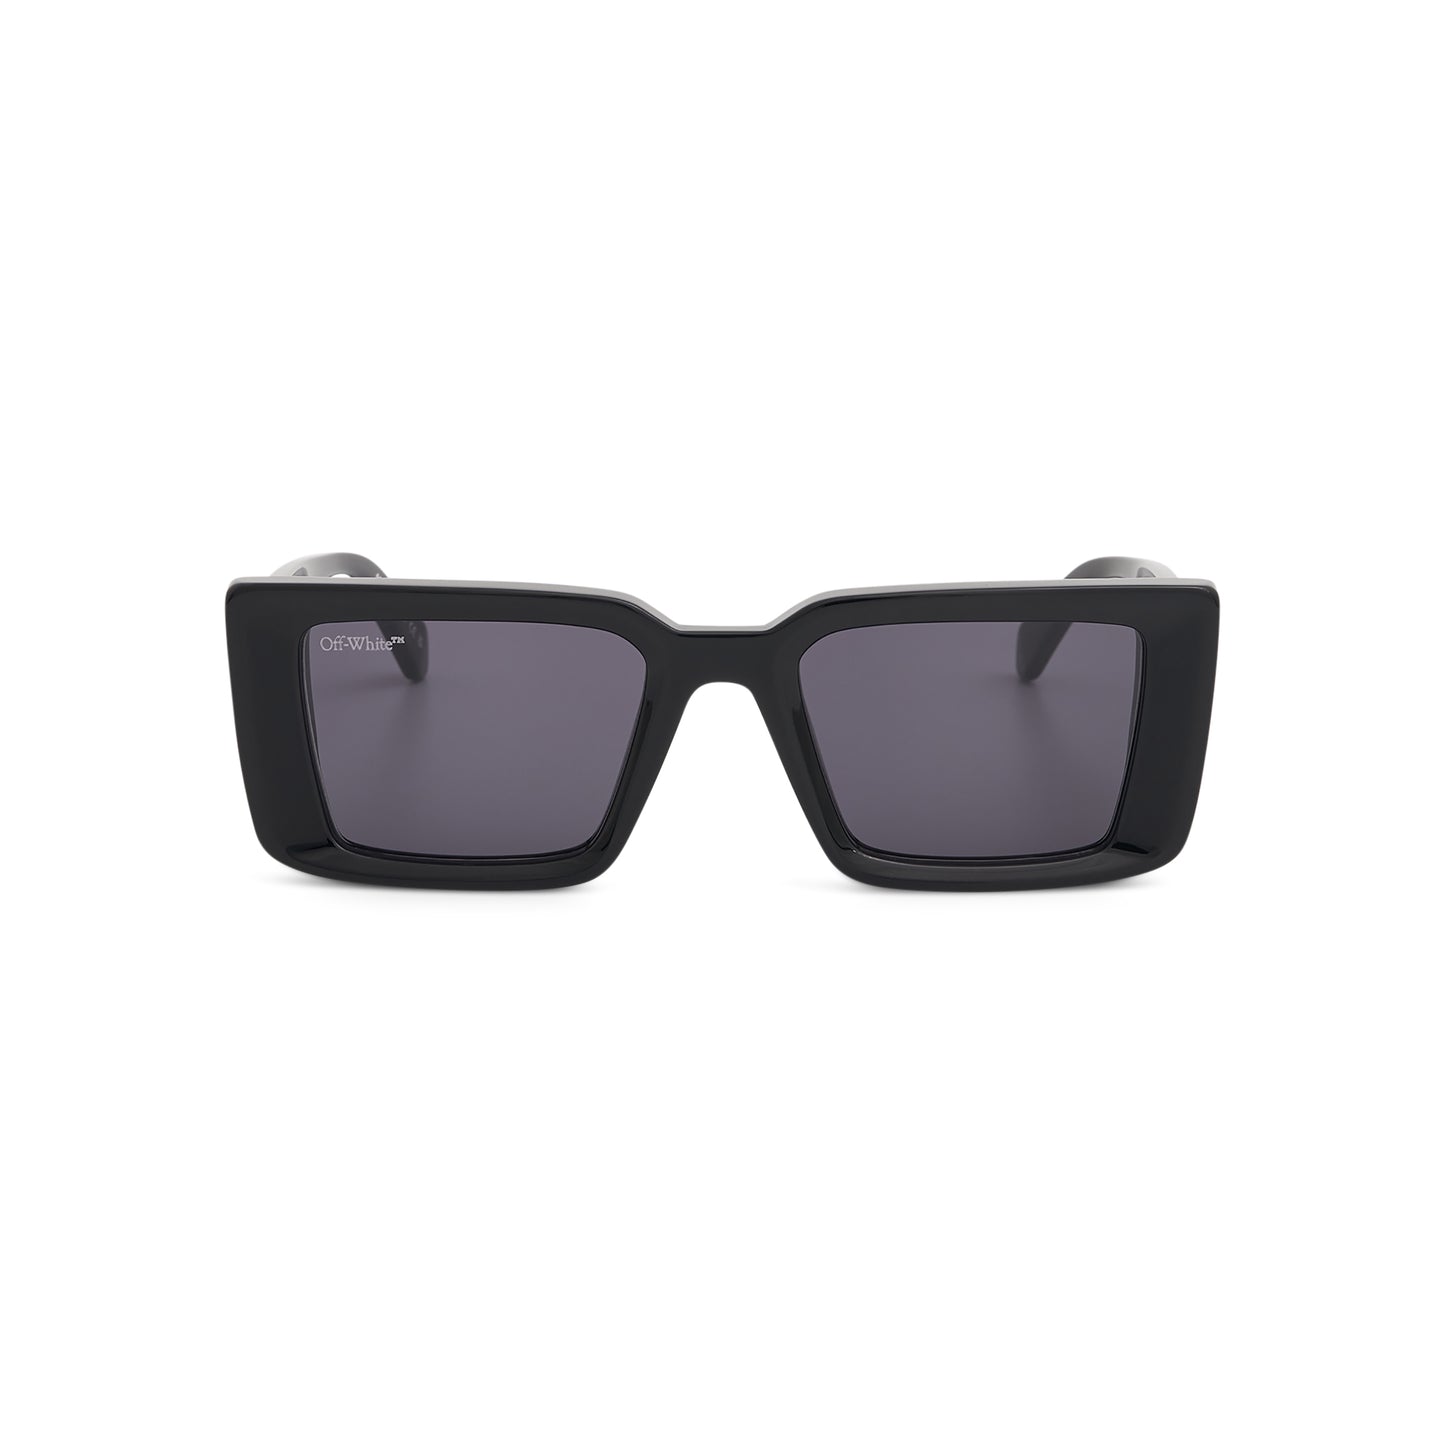 AF Savannah Sunglasses in Black/Dark Grey